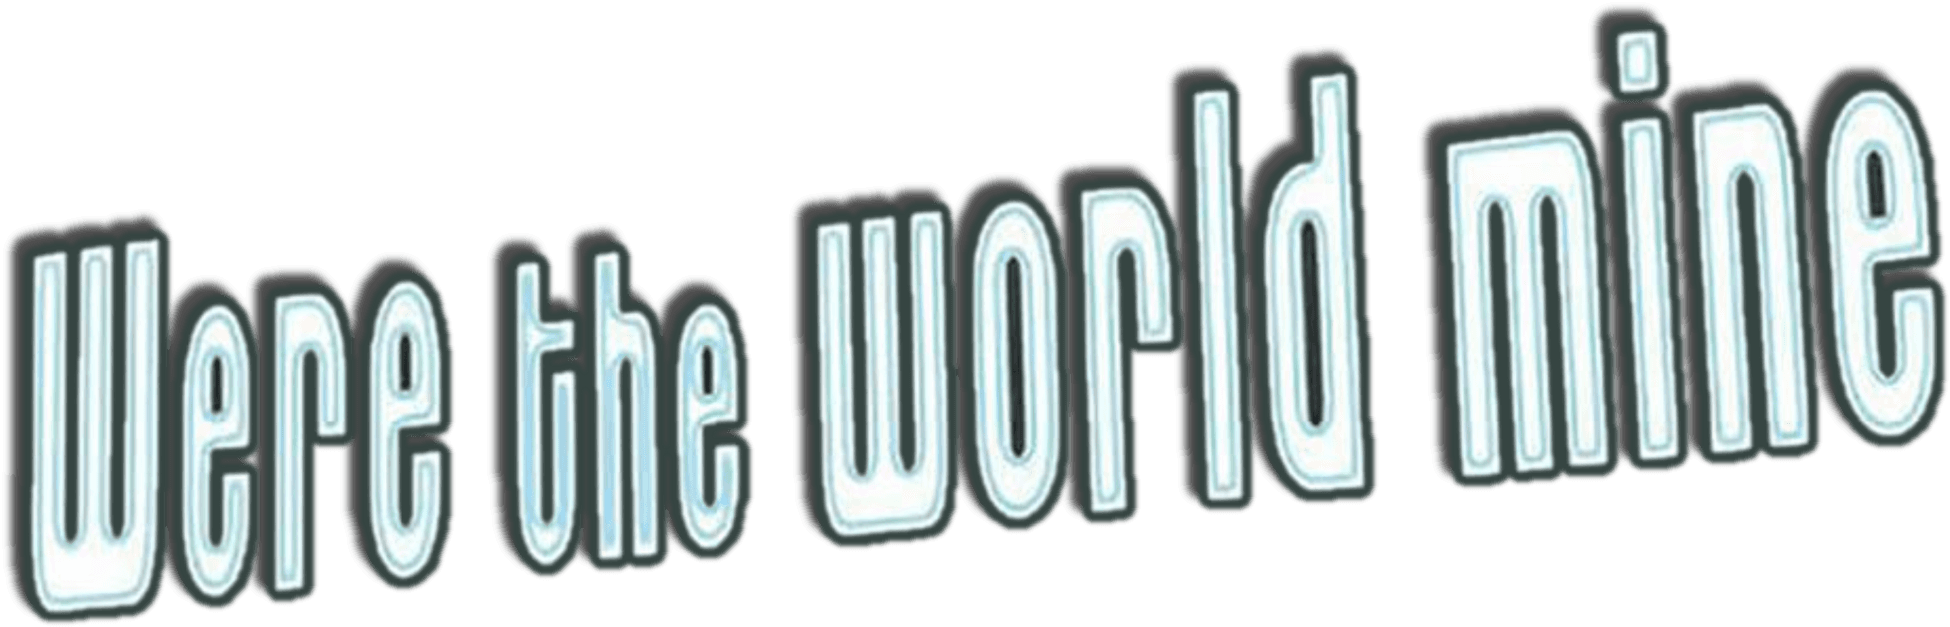 Were the World Mine logo